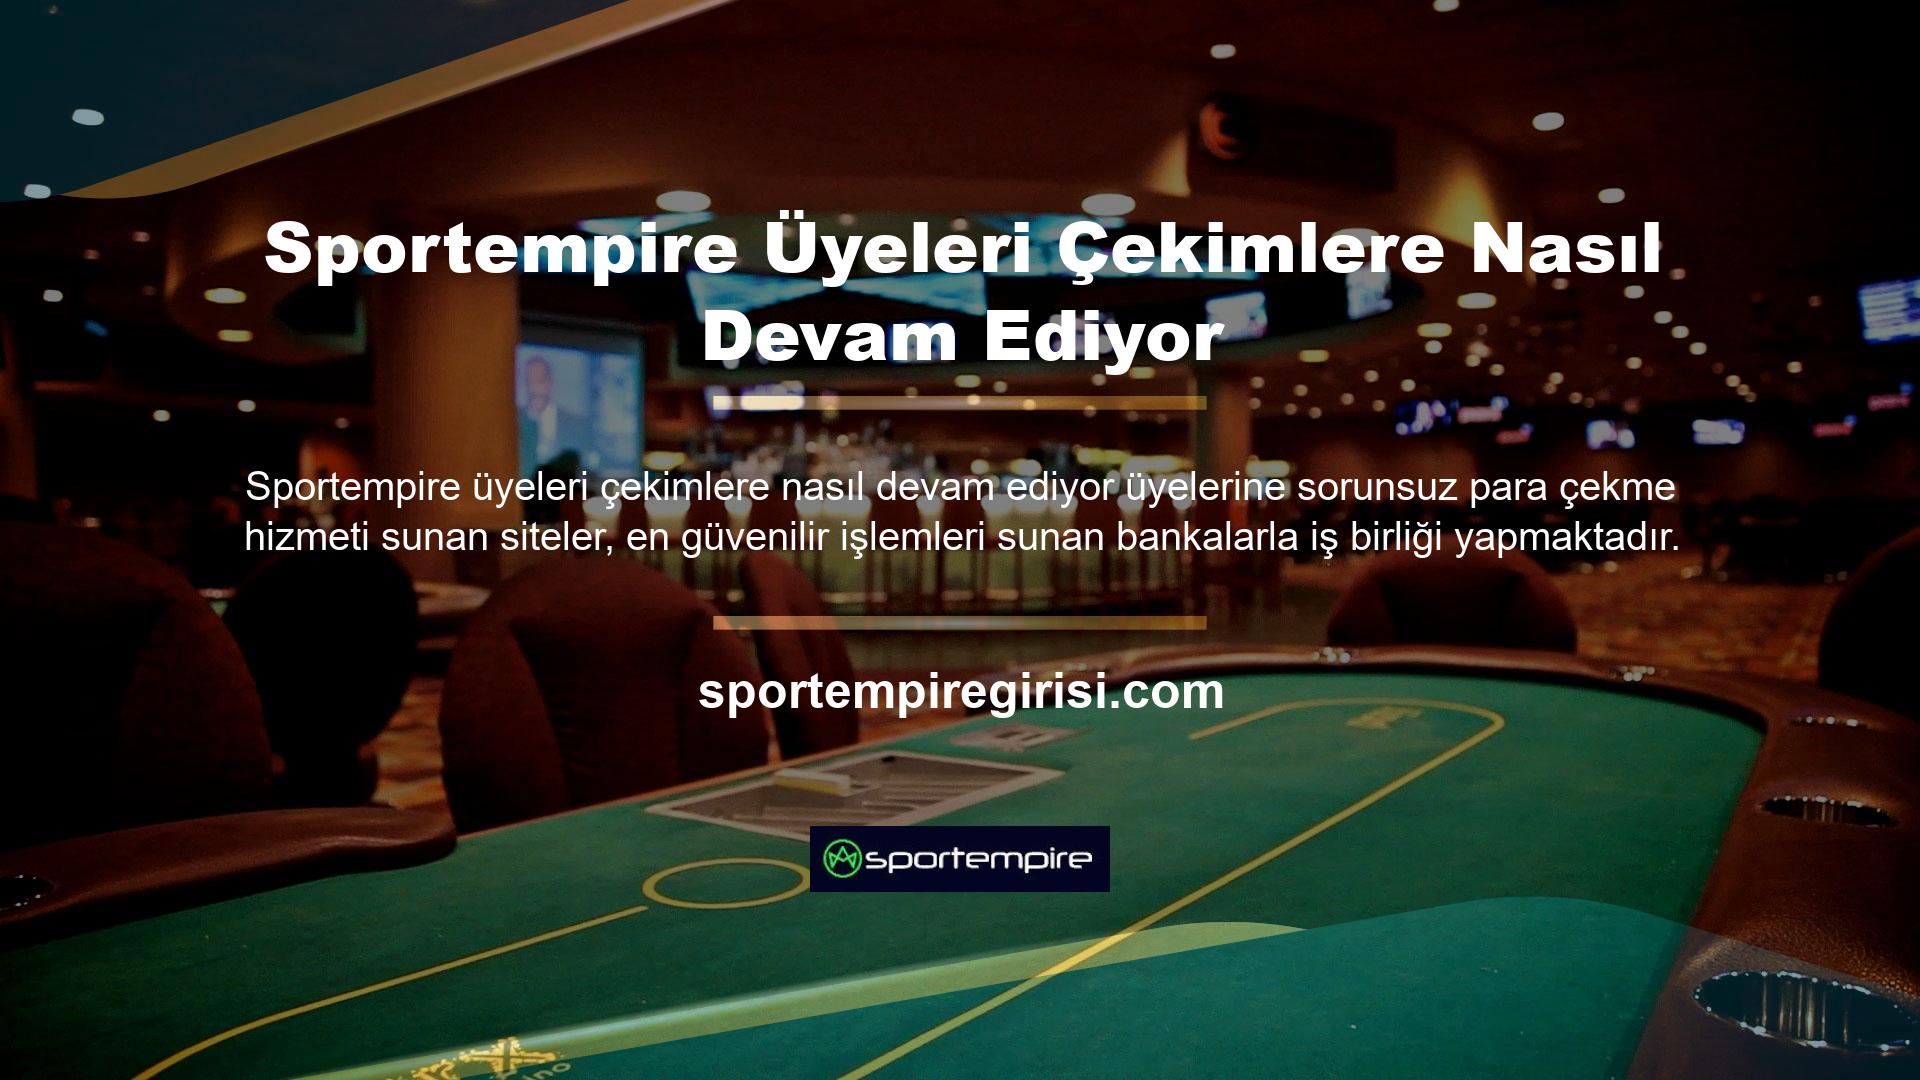 Sportempire Güvenilir Bahis SitesiSportempire bahis sitesi uluslararası ölçekte yasal ve güvenilir hizmetler sunan en iyi bahis sitelerinden biridir